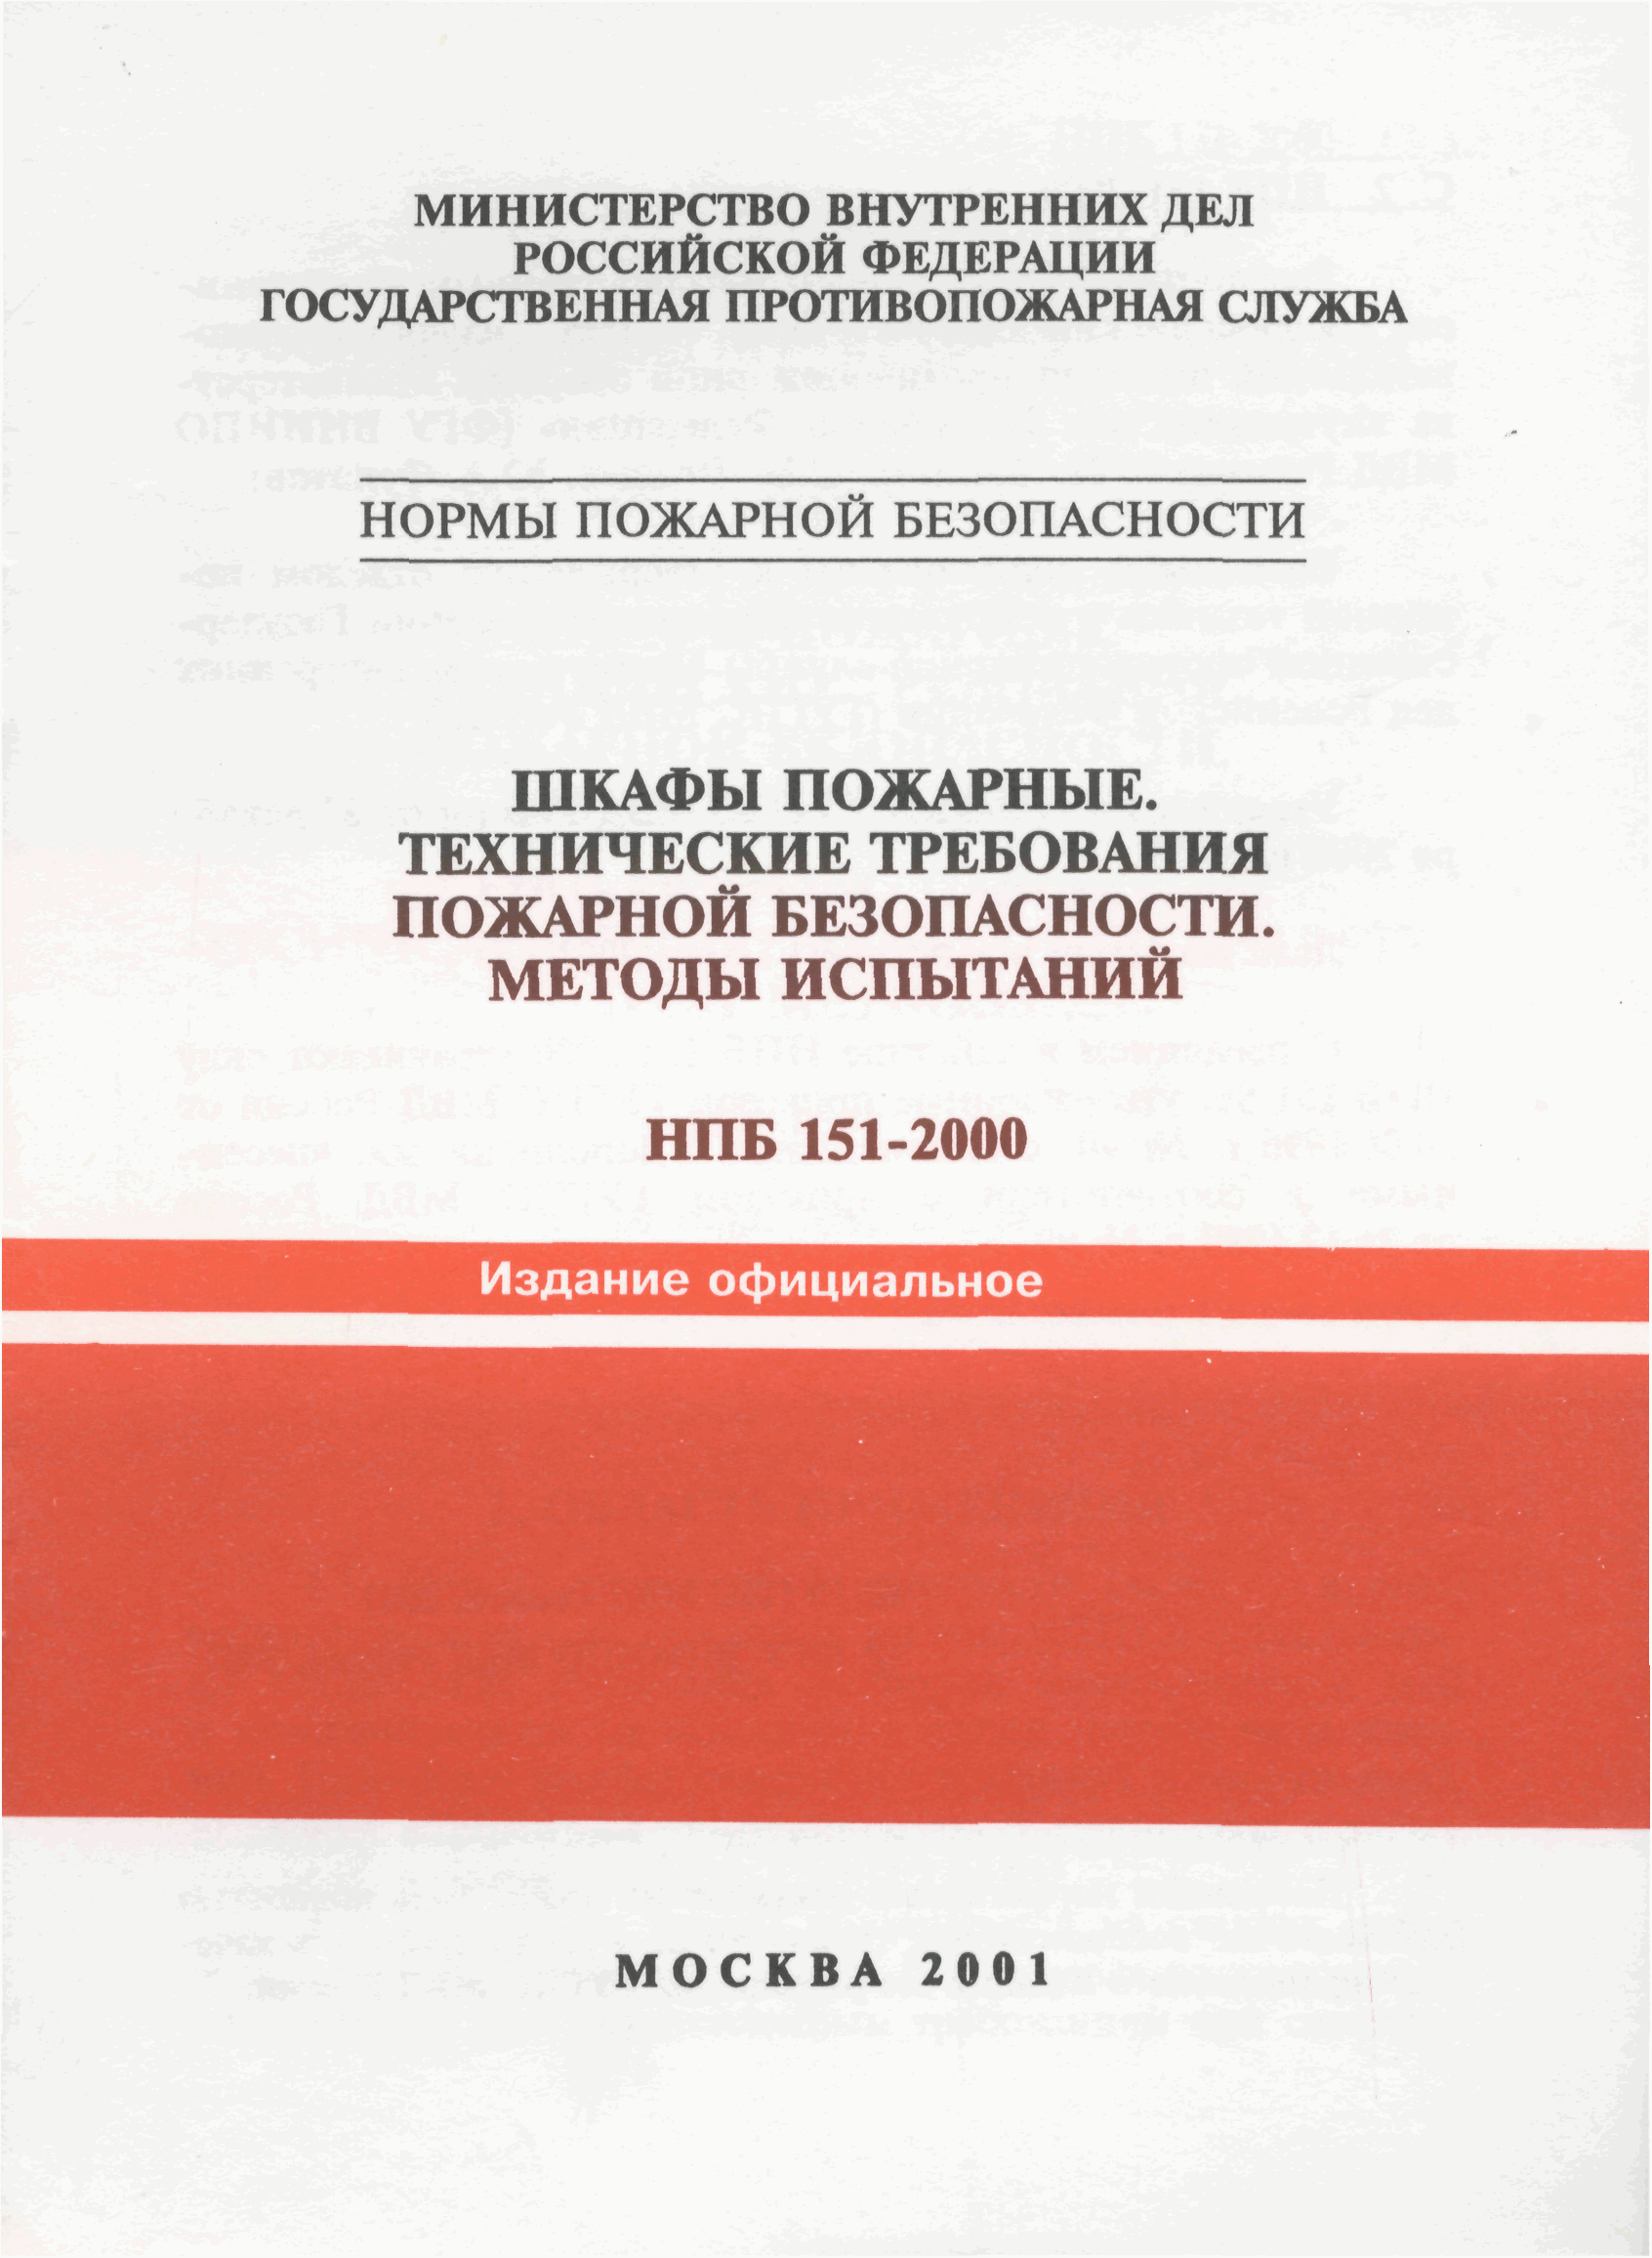 НПБ 151-2000